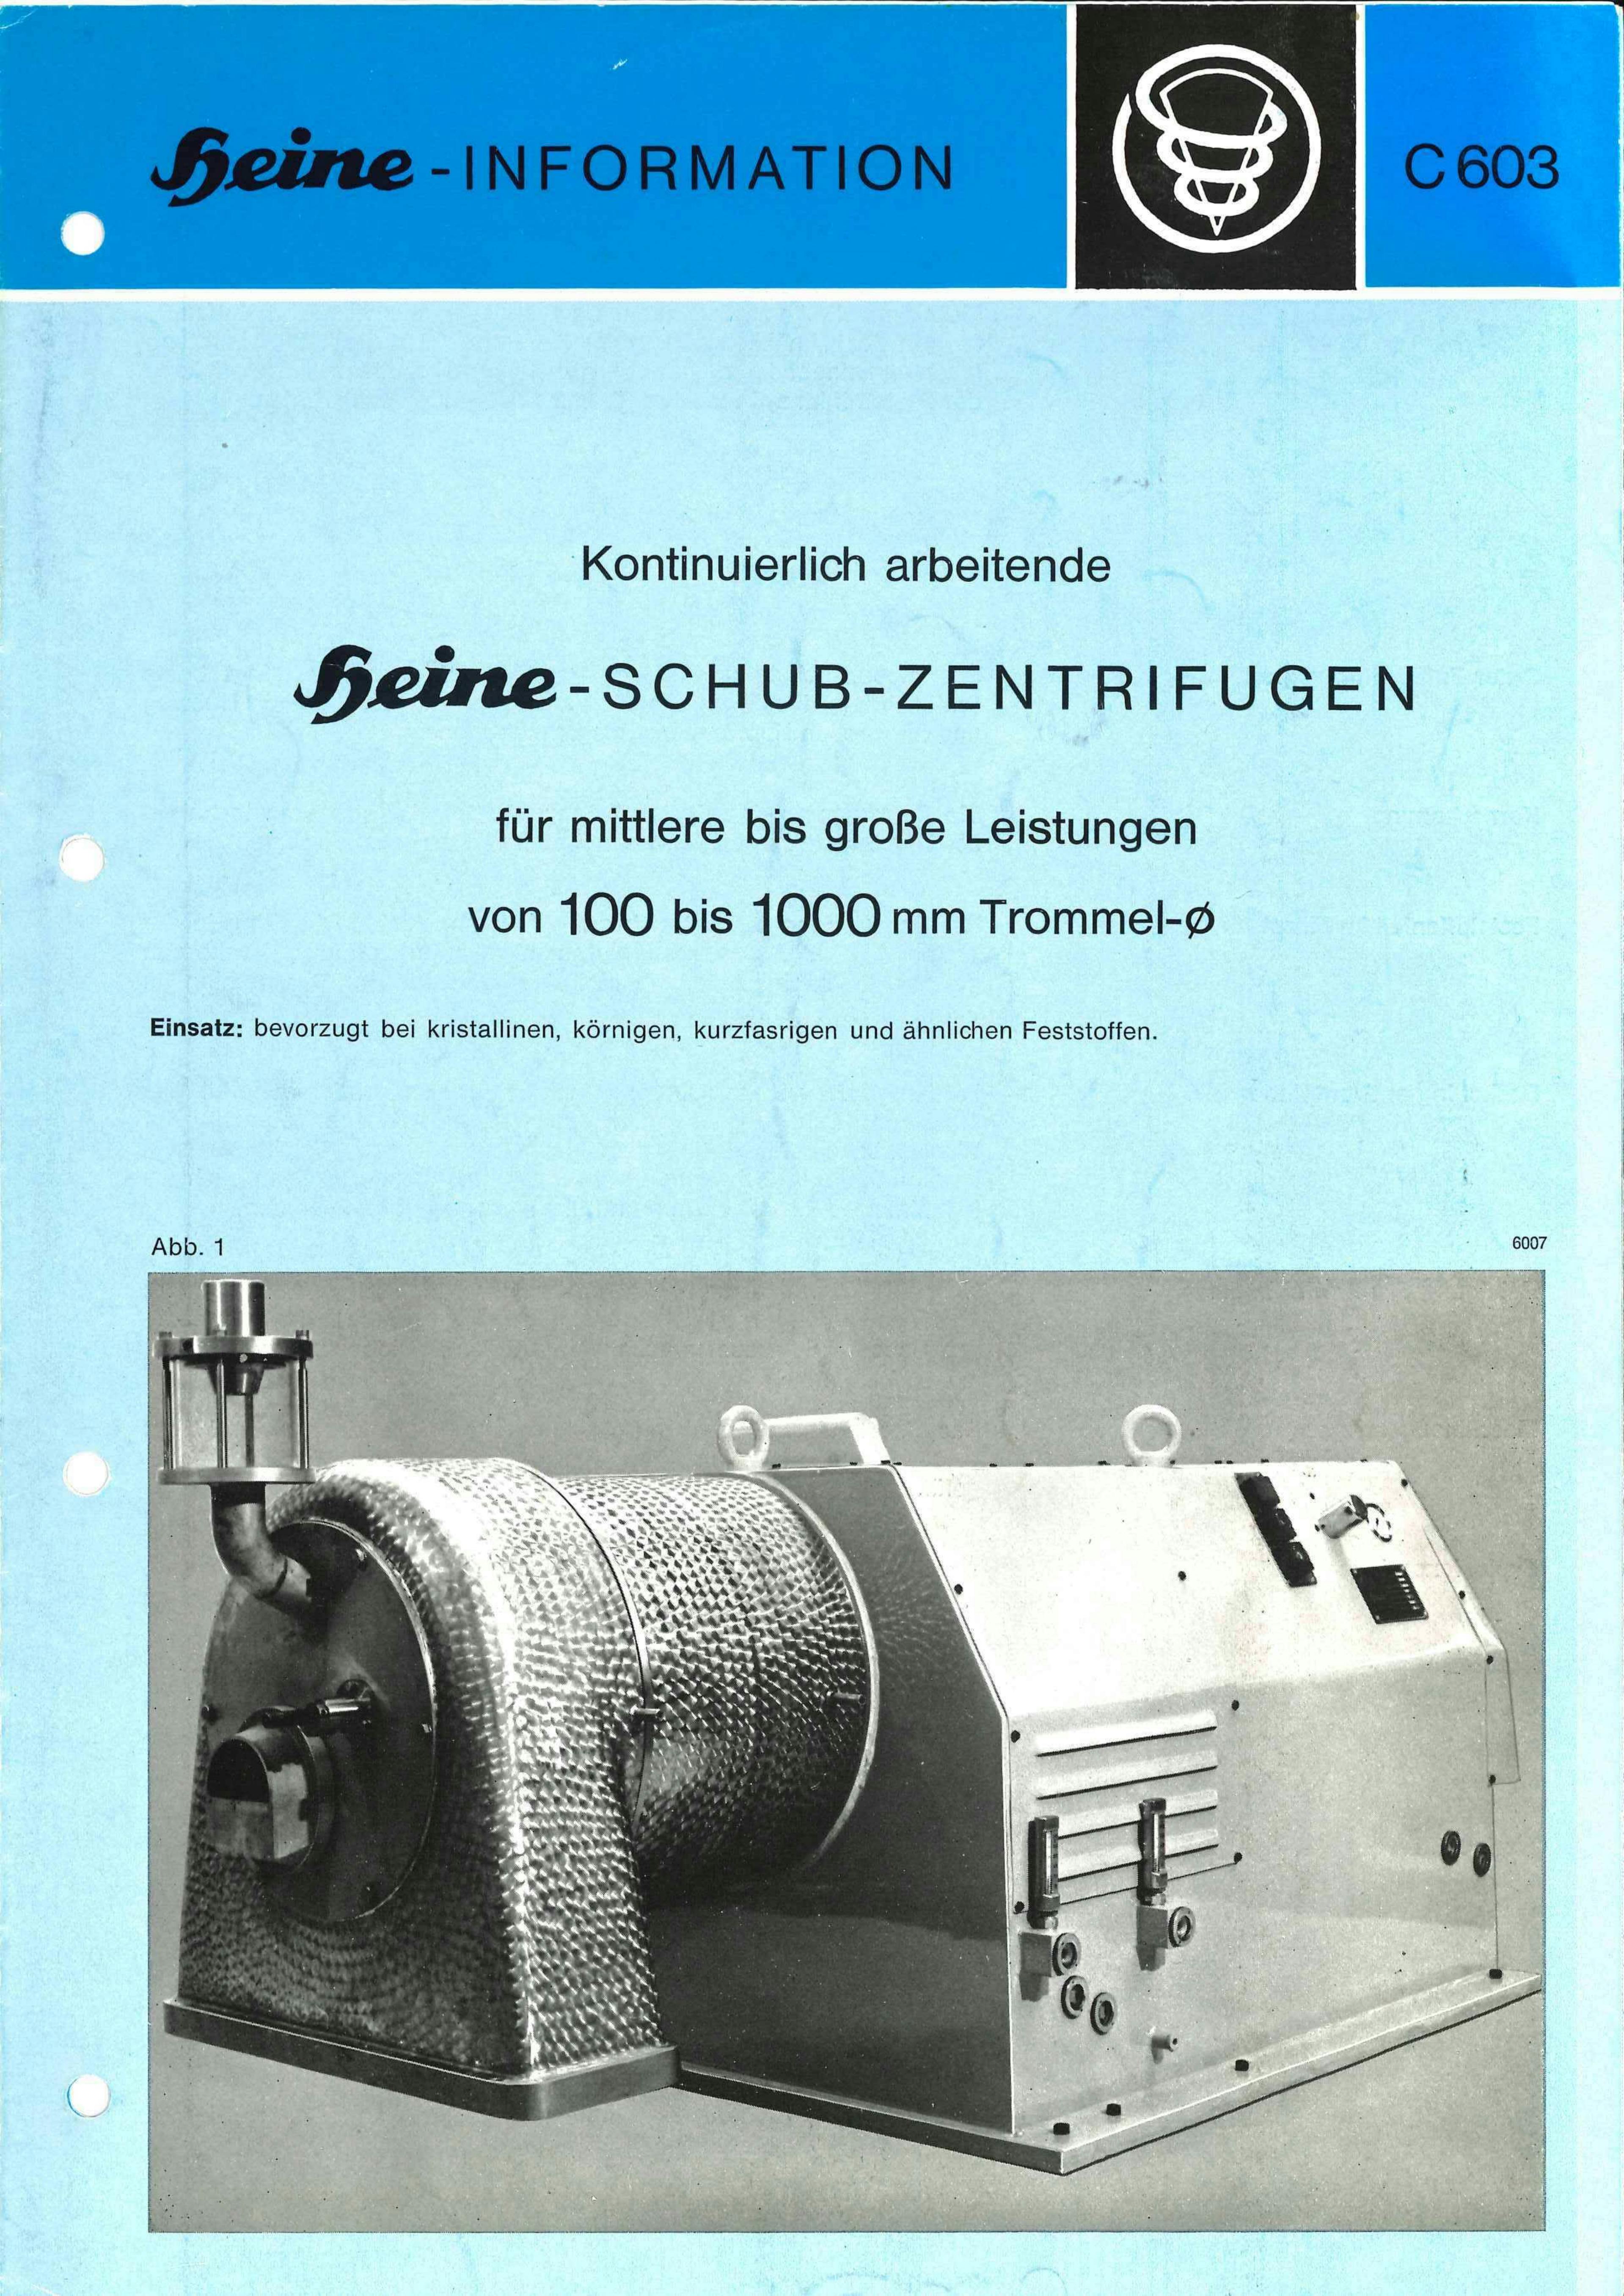 Heine Zentrifug 606 - Pusher centrifuge - image 12